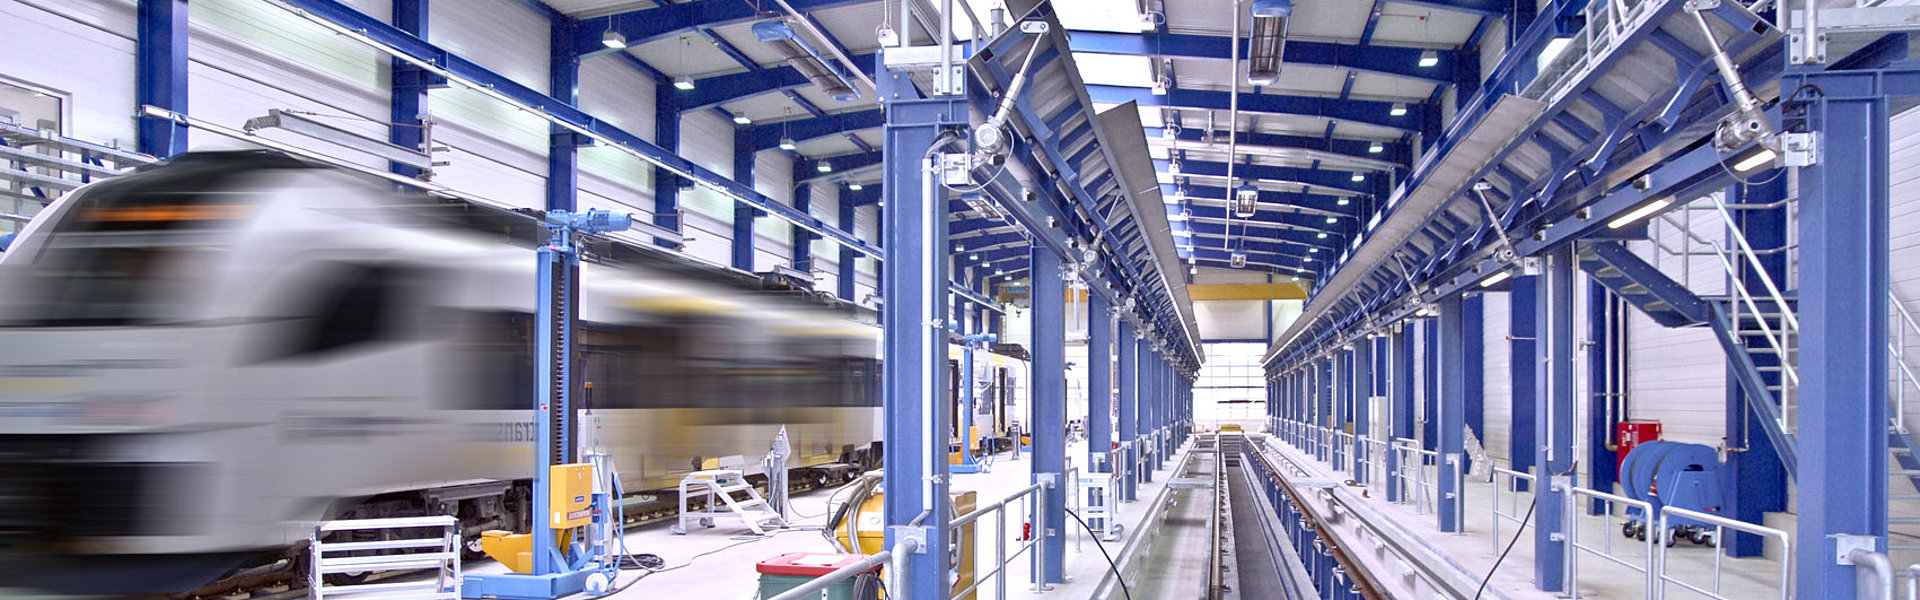 Industriebau: Werkstätten für Schienenfahrzeuge